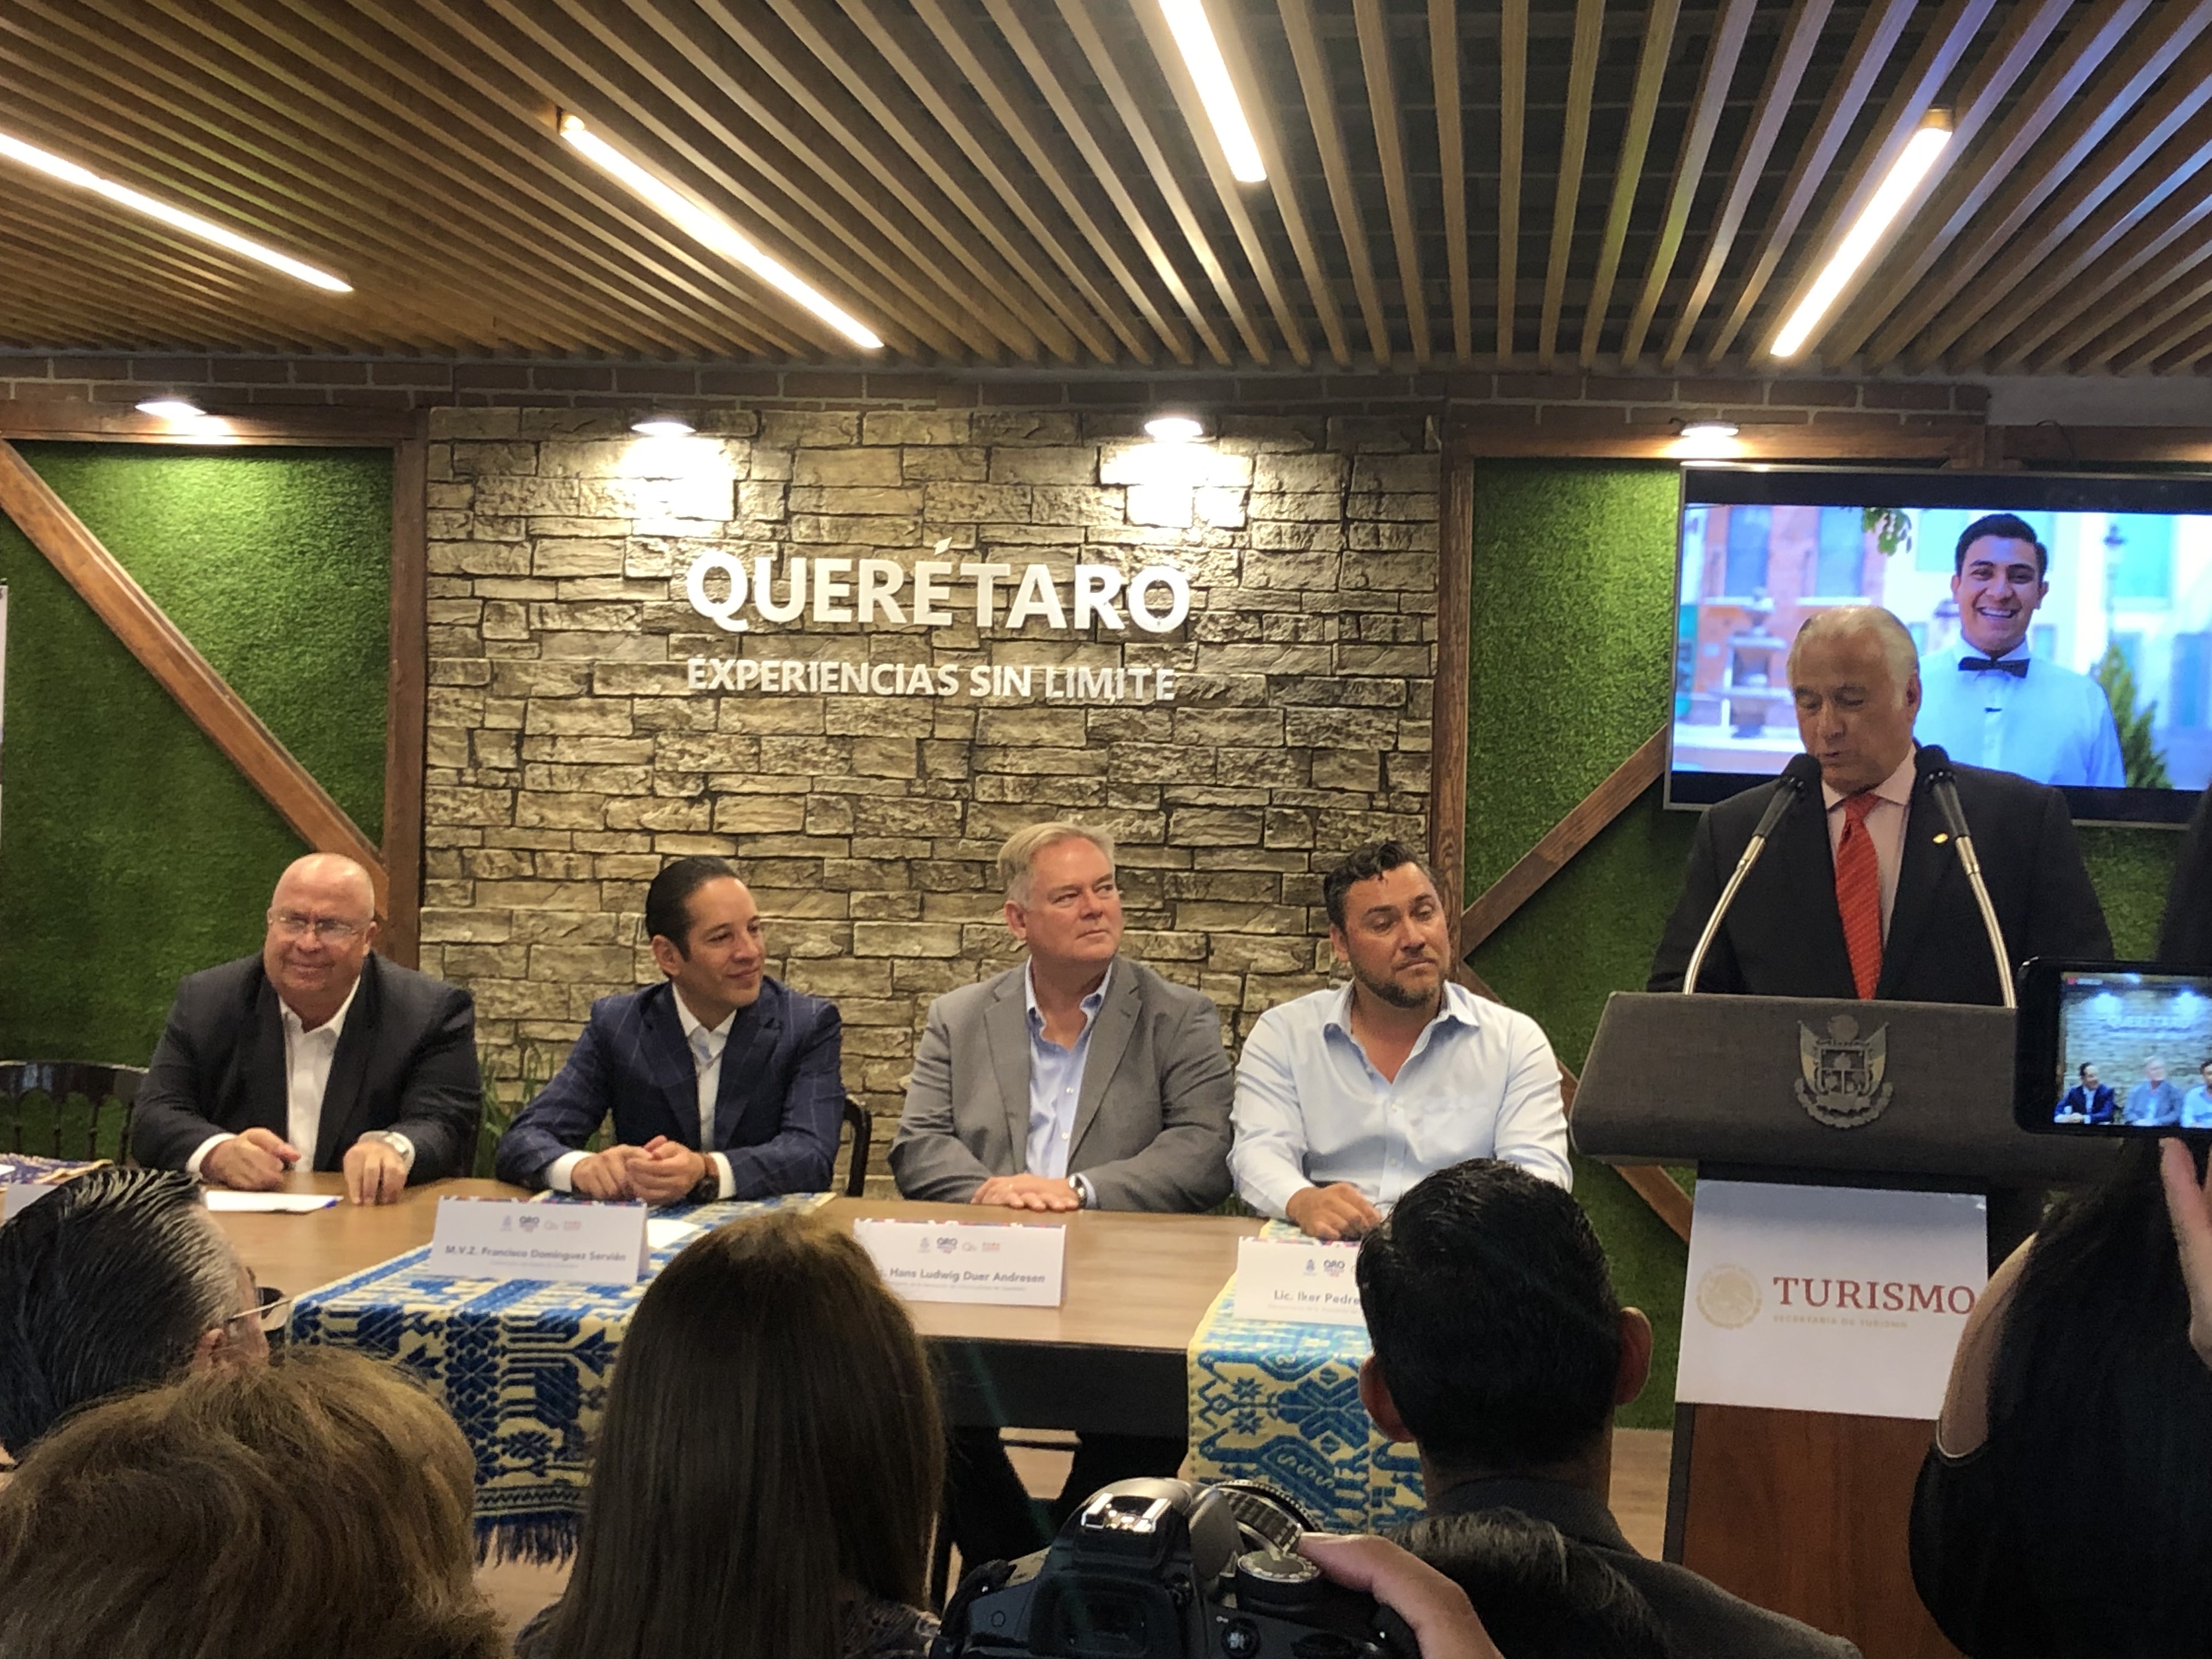  Gobierno Federal buscará atraer turismo chino a Querétaro